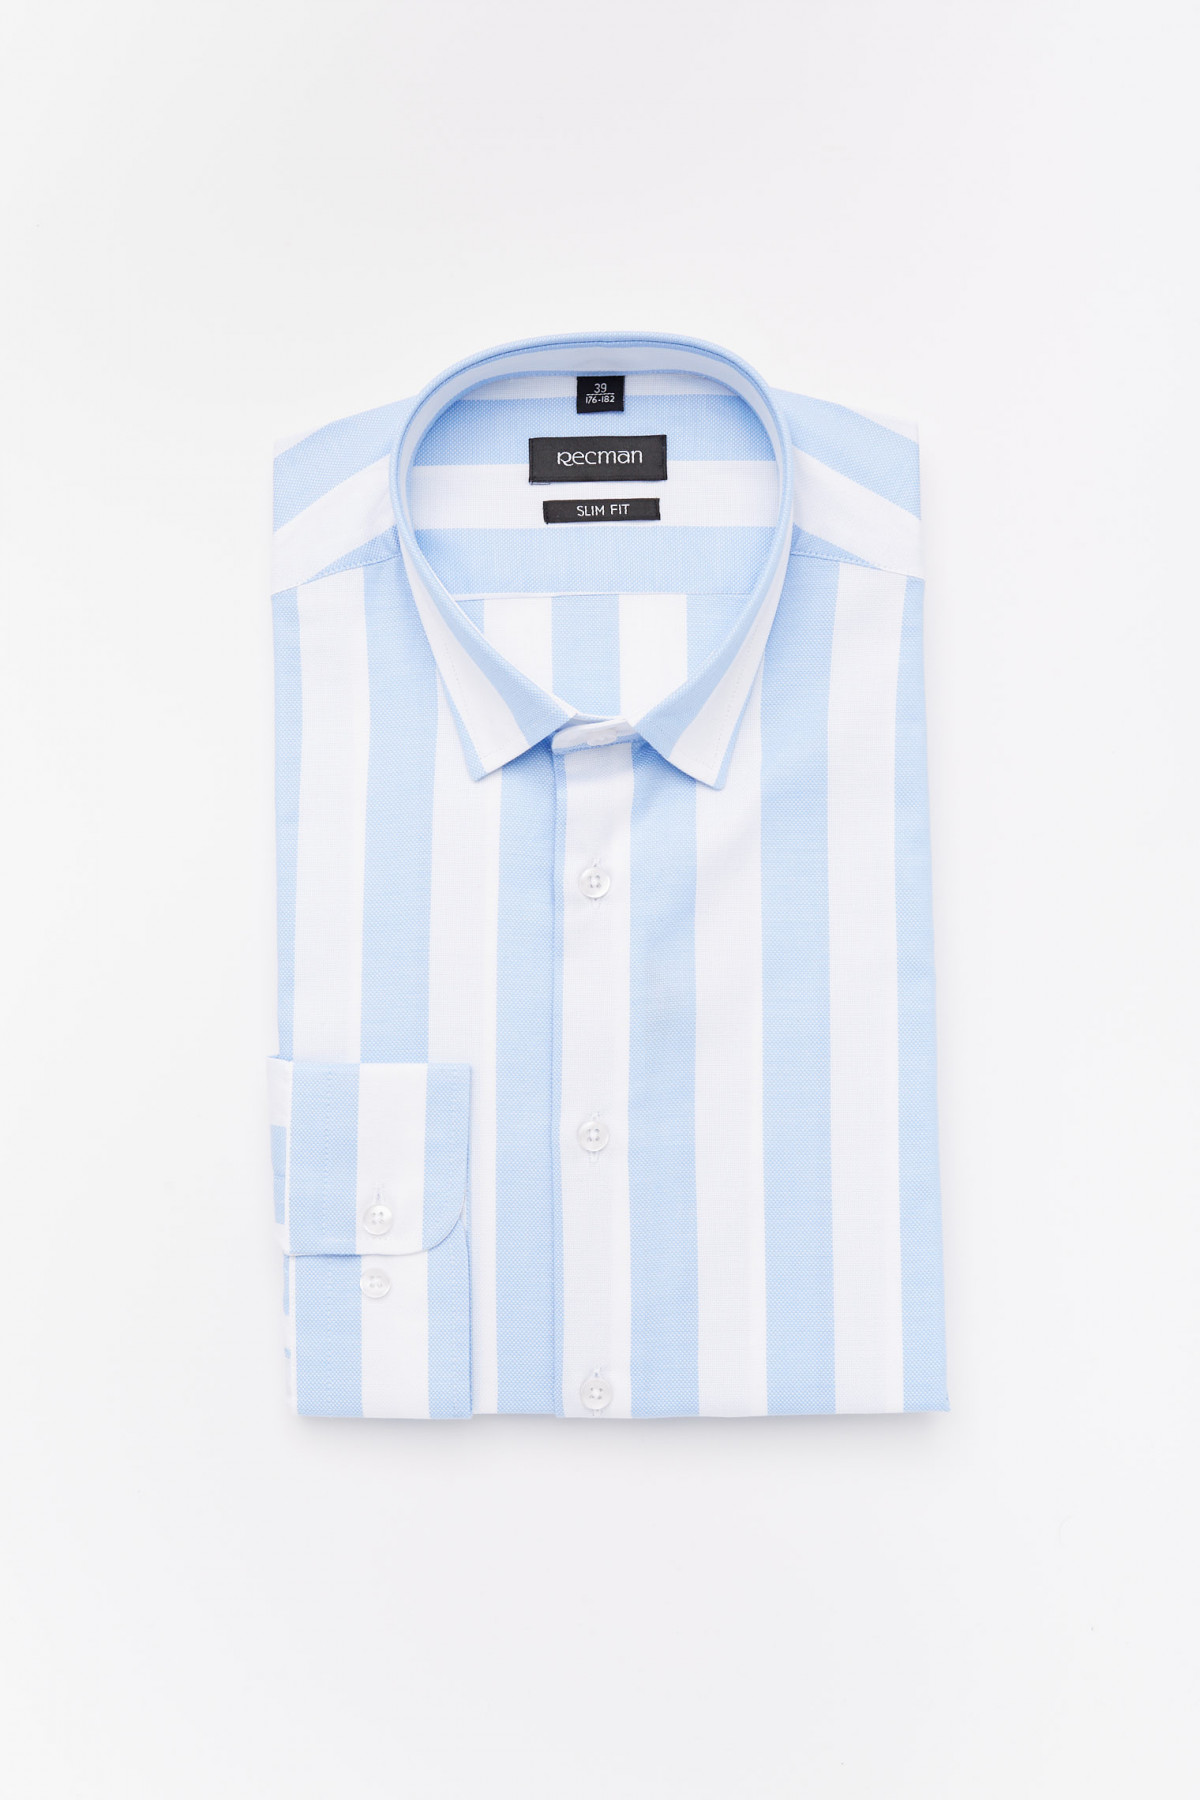 Bawełniana koszula w niebieskie paski slim fit Recman VERSONE 5013A